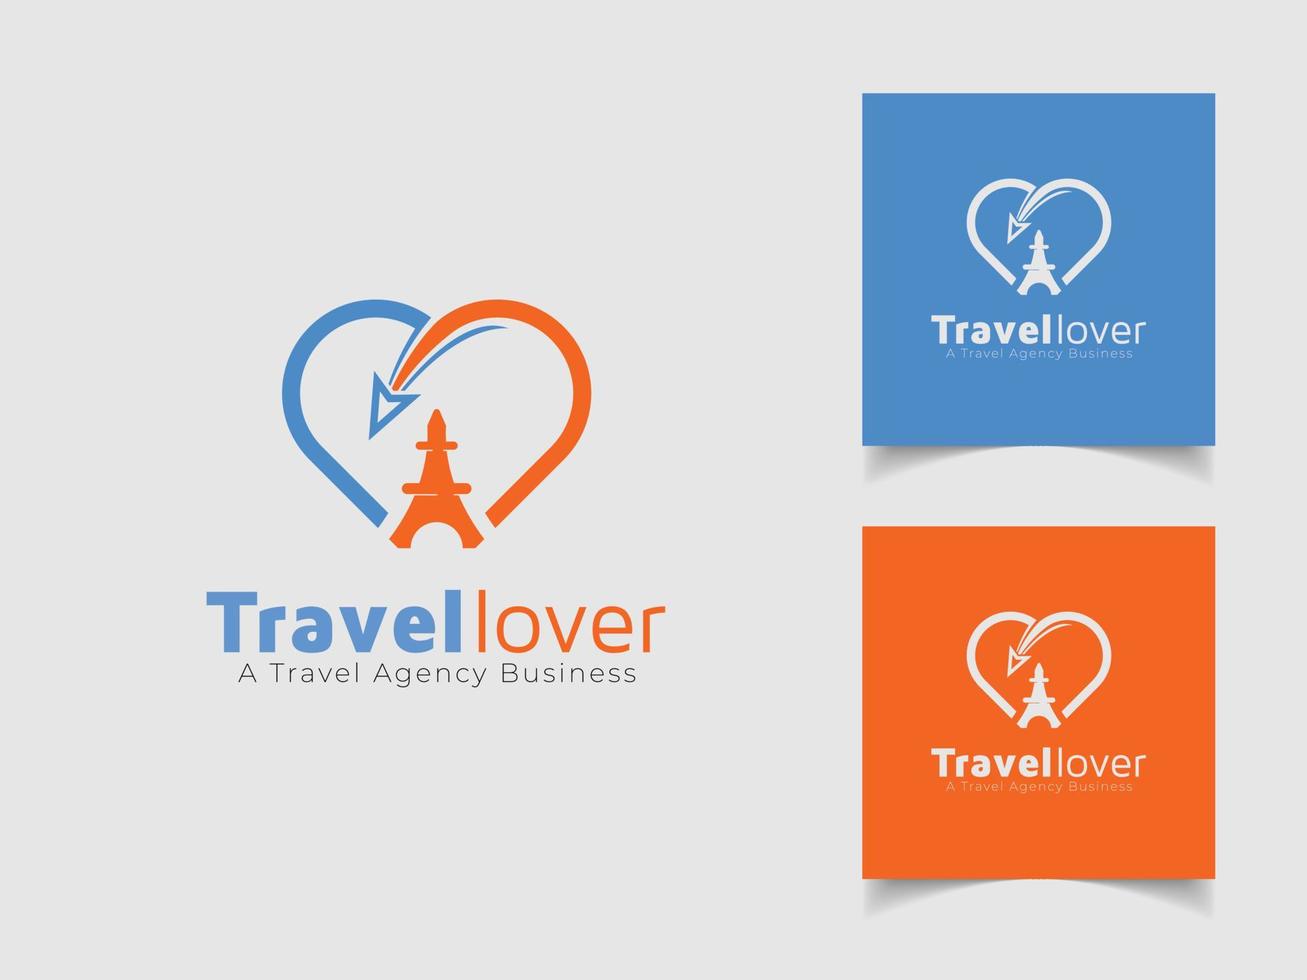 online reservering reizen logo ontwerp sjabloon. reizen logo voor de bedrijf bureau. vector